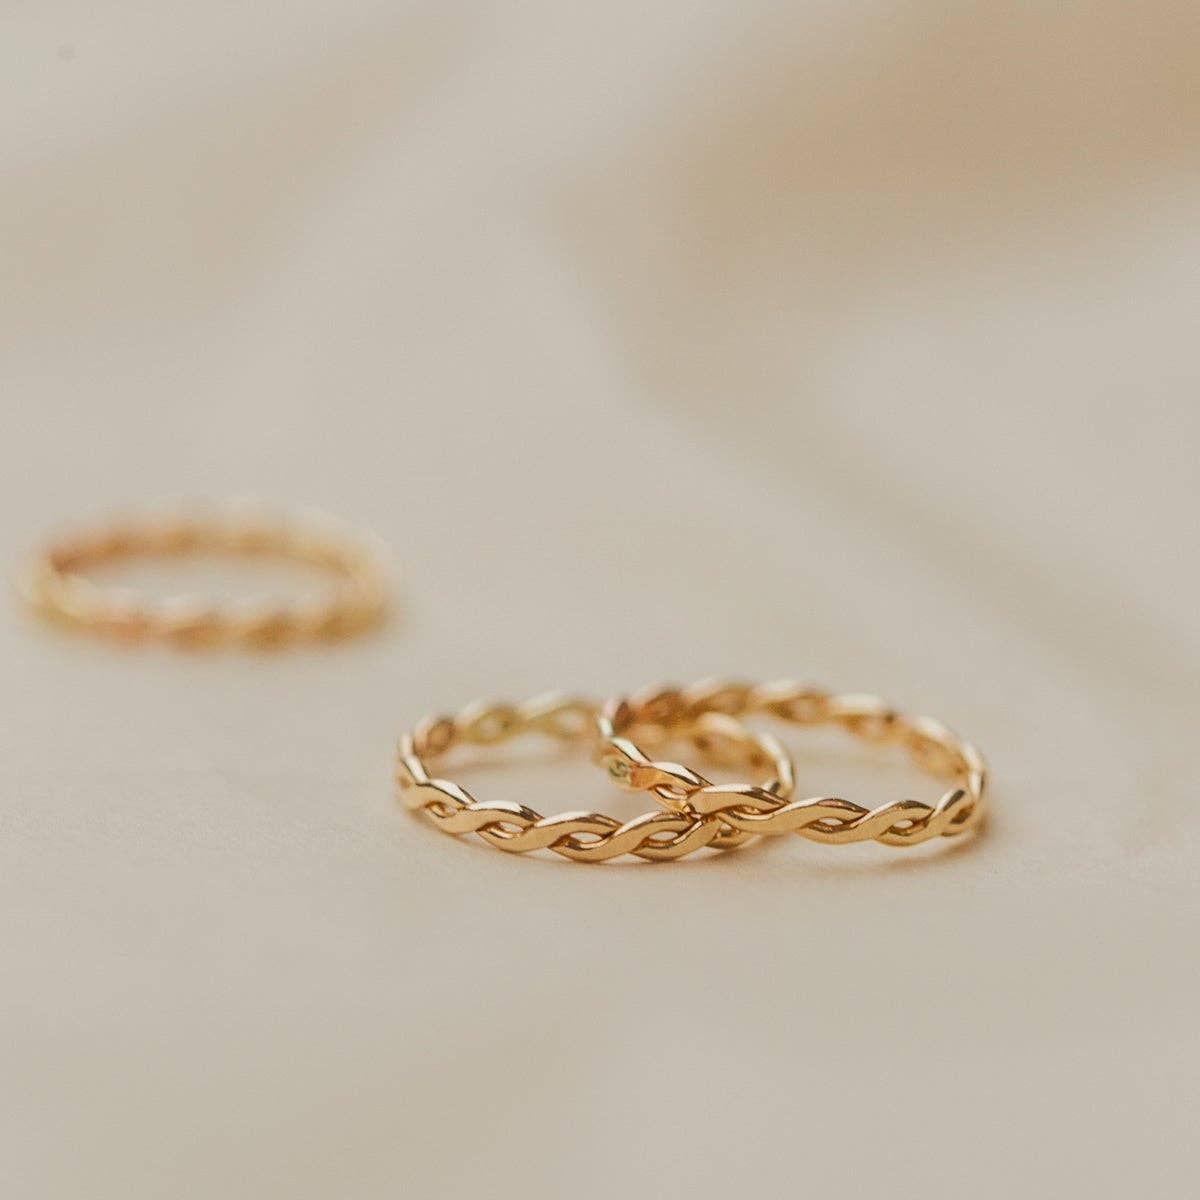 Laurel Ring - Gold Filled / 8